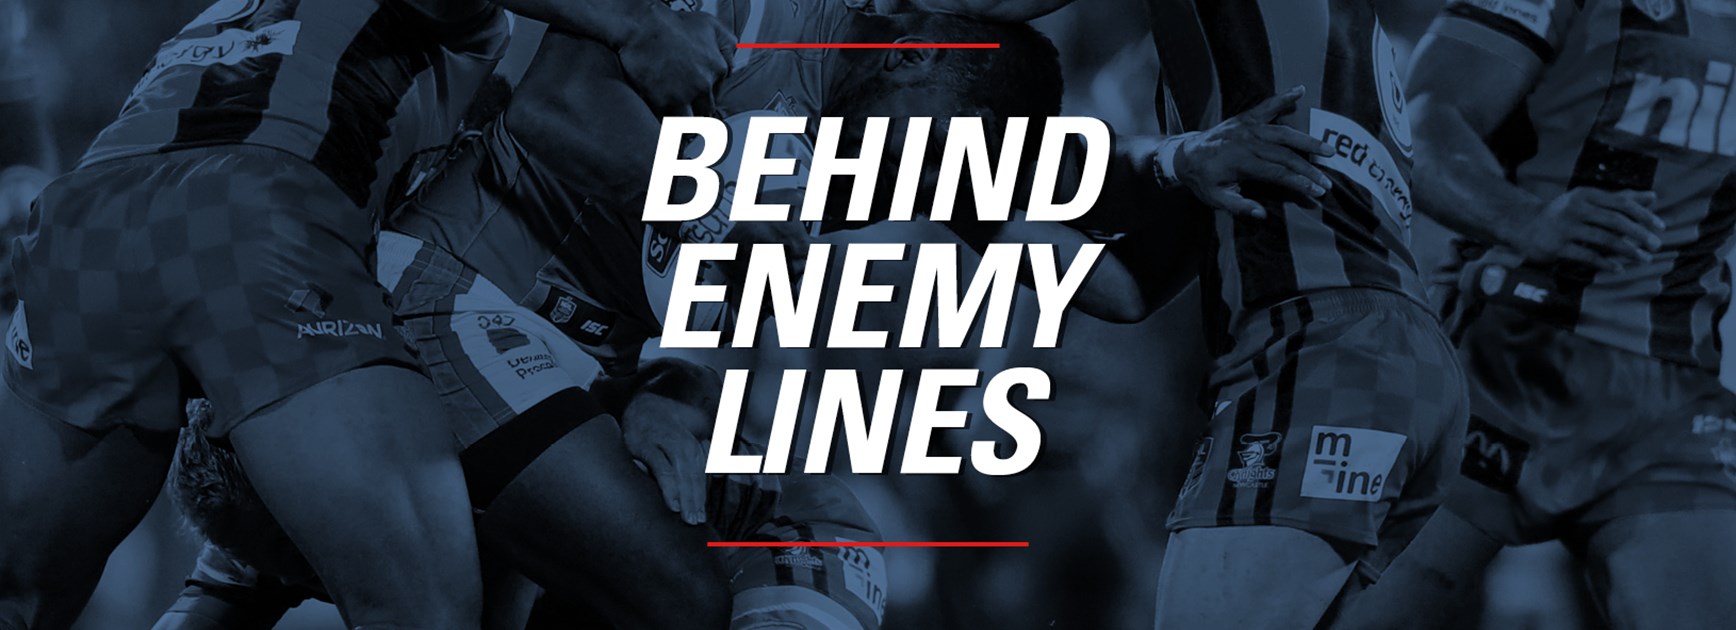 Behind Enemy Lines: Round 3